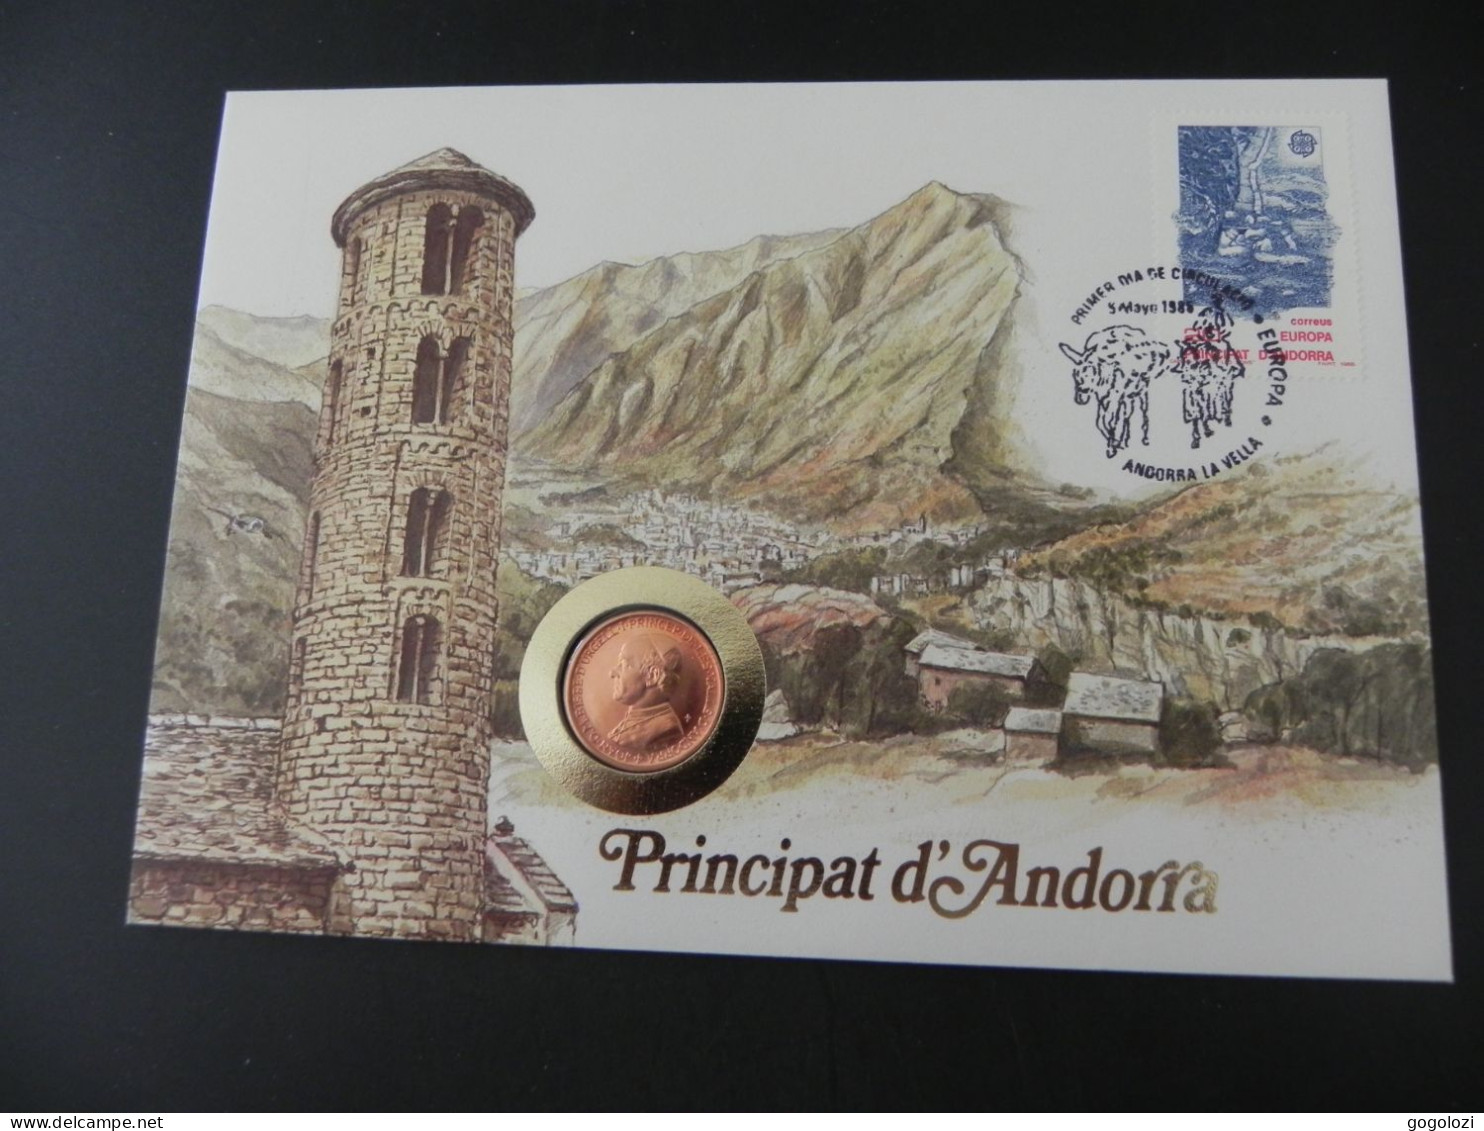 Andorra 25 Centims 1986 - Numis Letter 1988 - Andorra